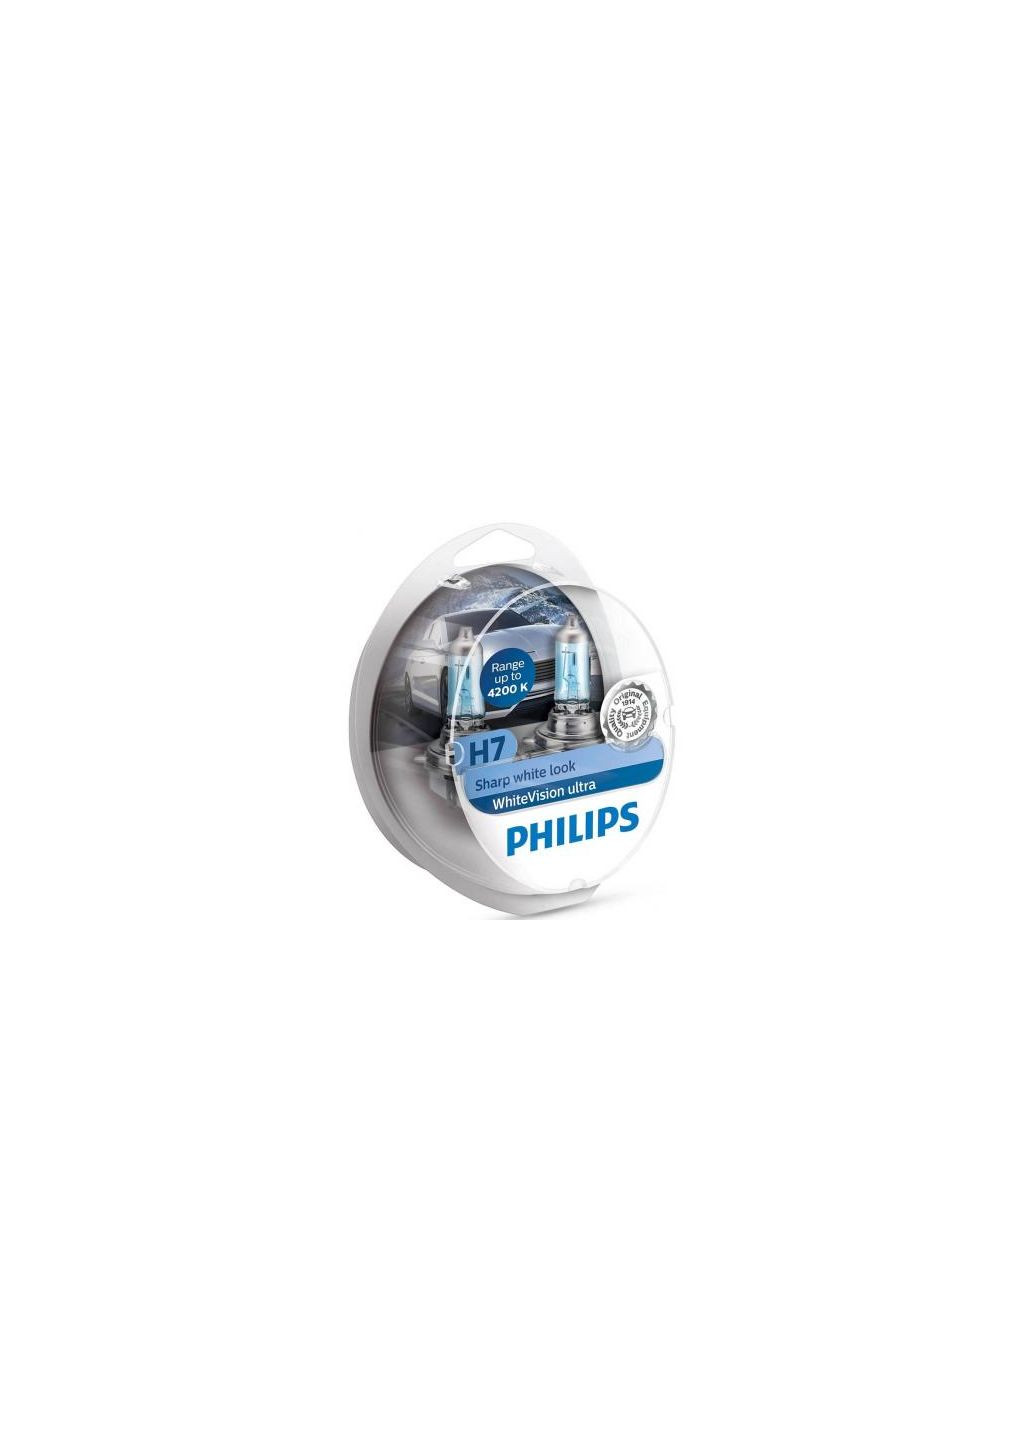 Автолампа (12972WVUSM) Philips h7 whitevision ultra +60% 2шт (276532410)